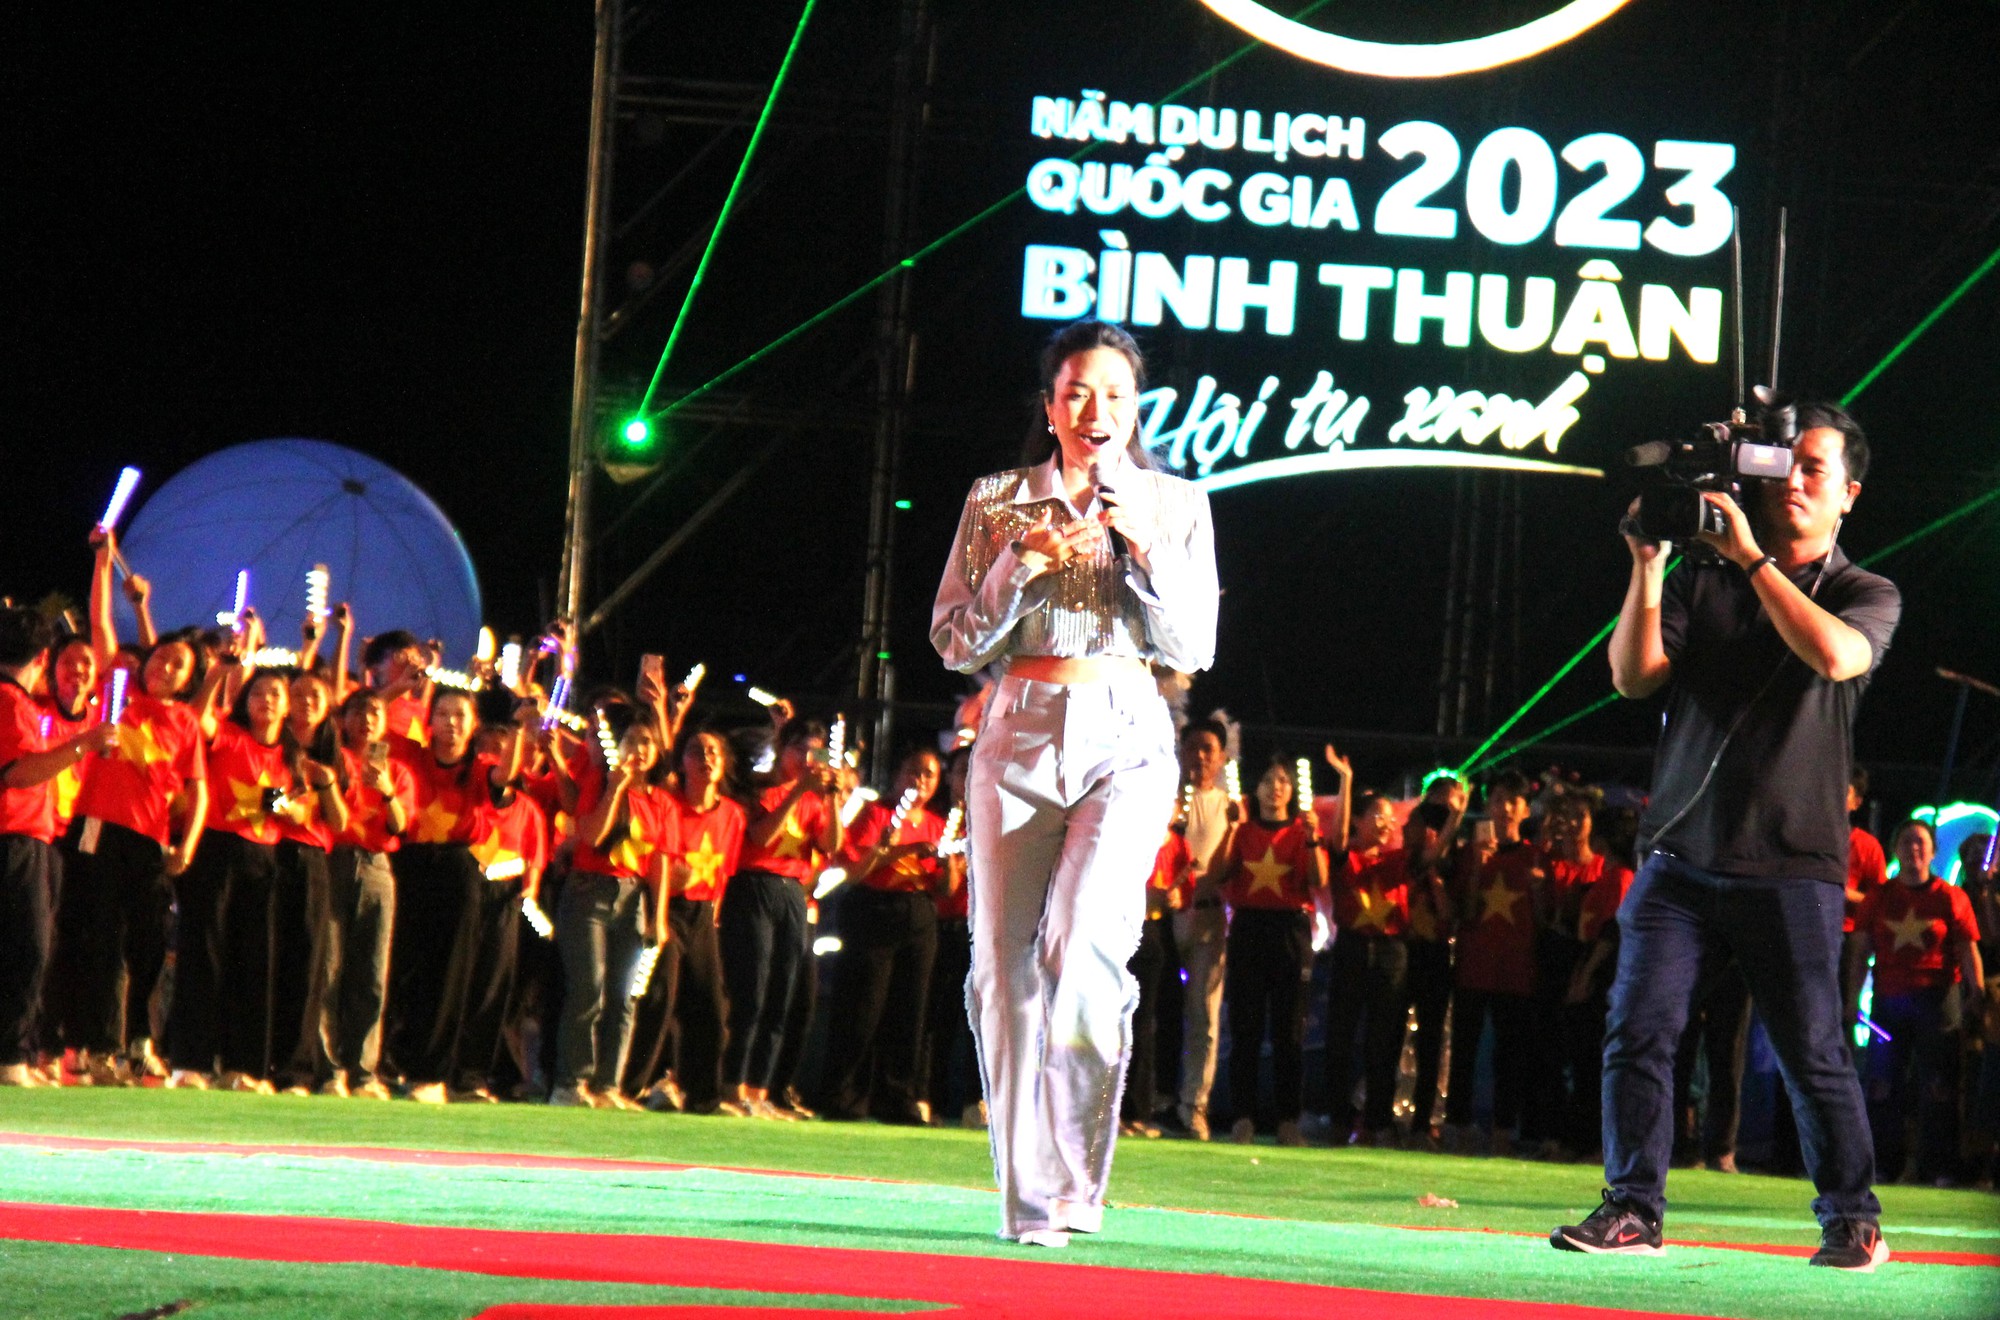 Du lịch Bình Thuận bội thu trong năm du lịch Quốc gia 2023 - Ảnh 3.